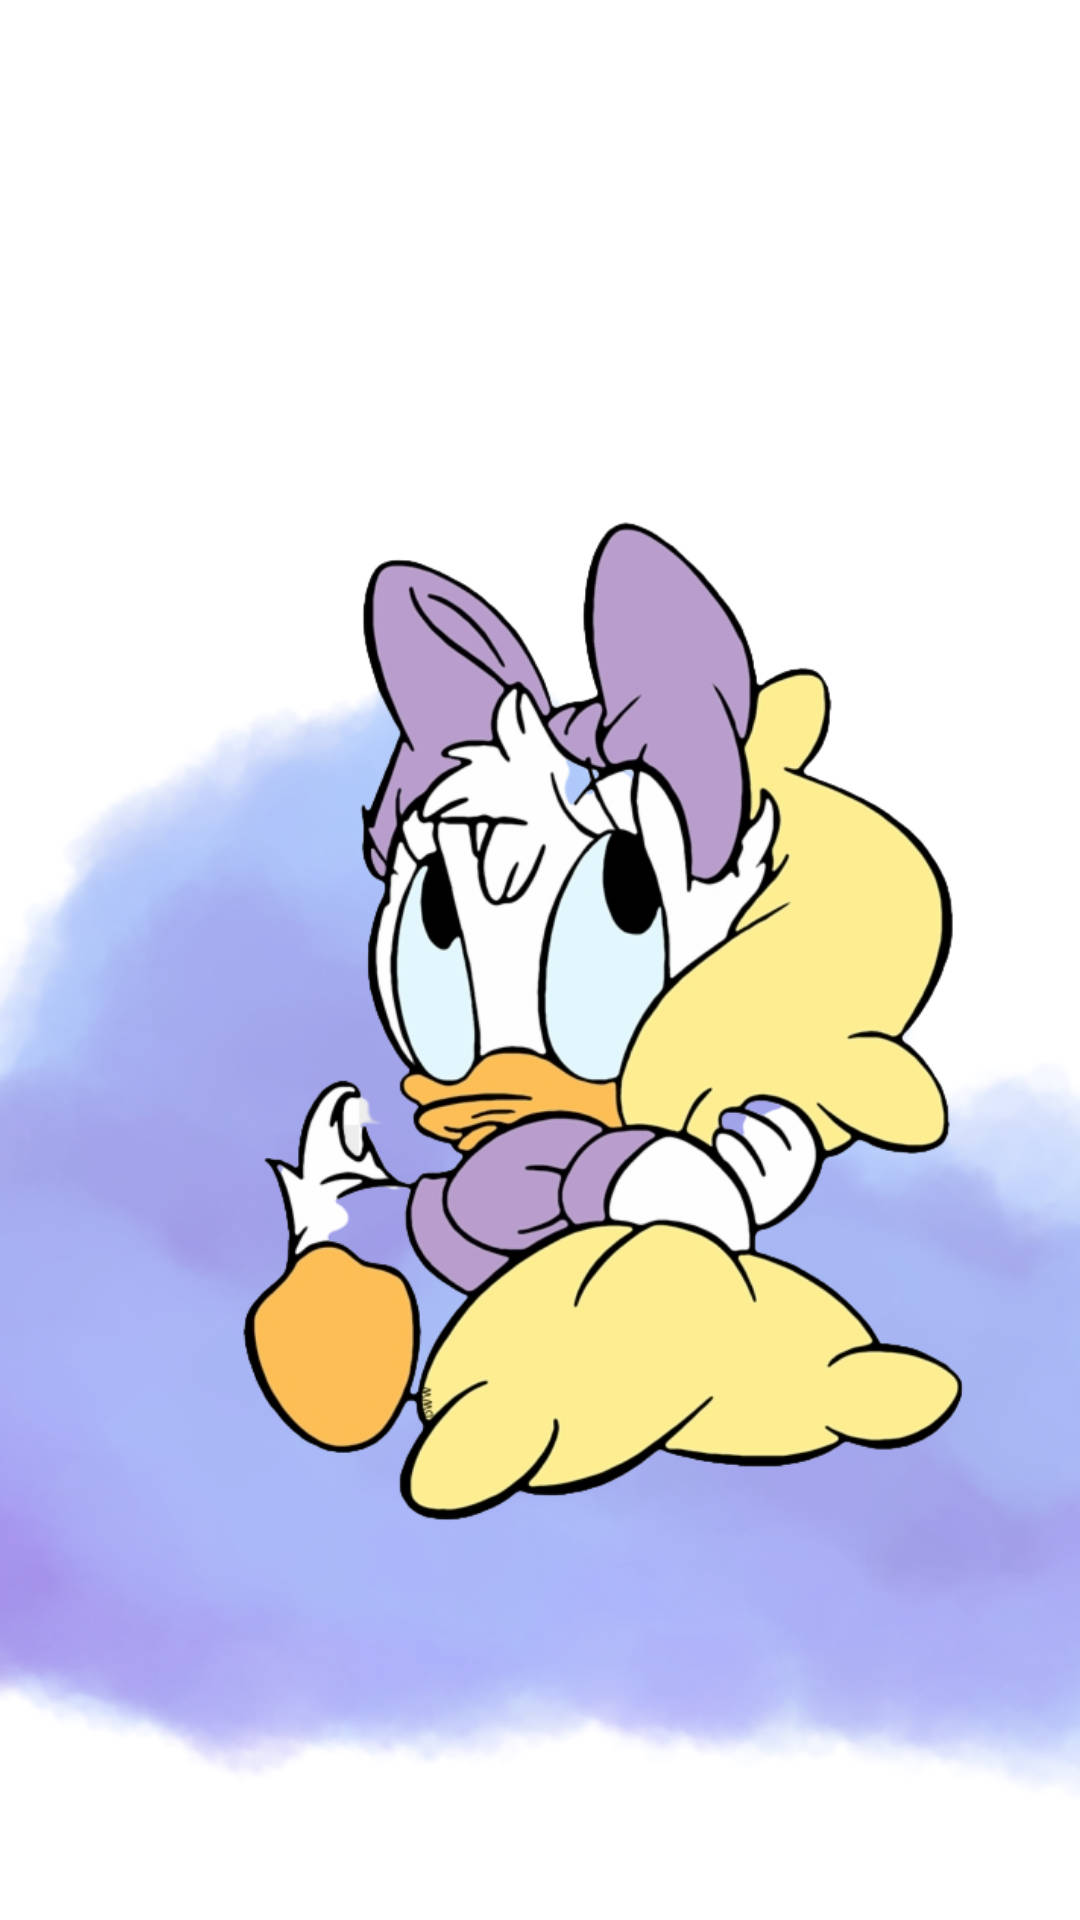 Adorable Daisy Duck In Purple Cloud Wallpaper